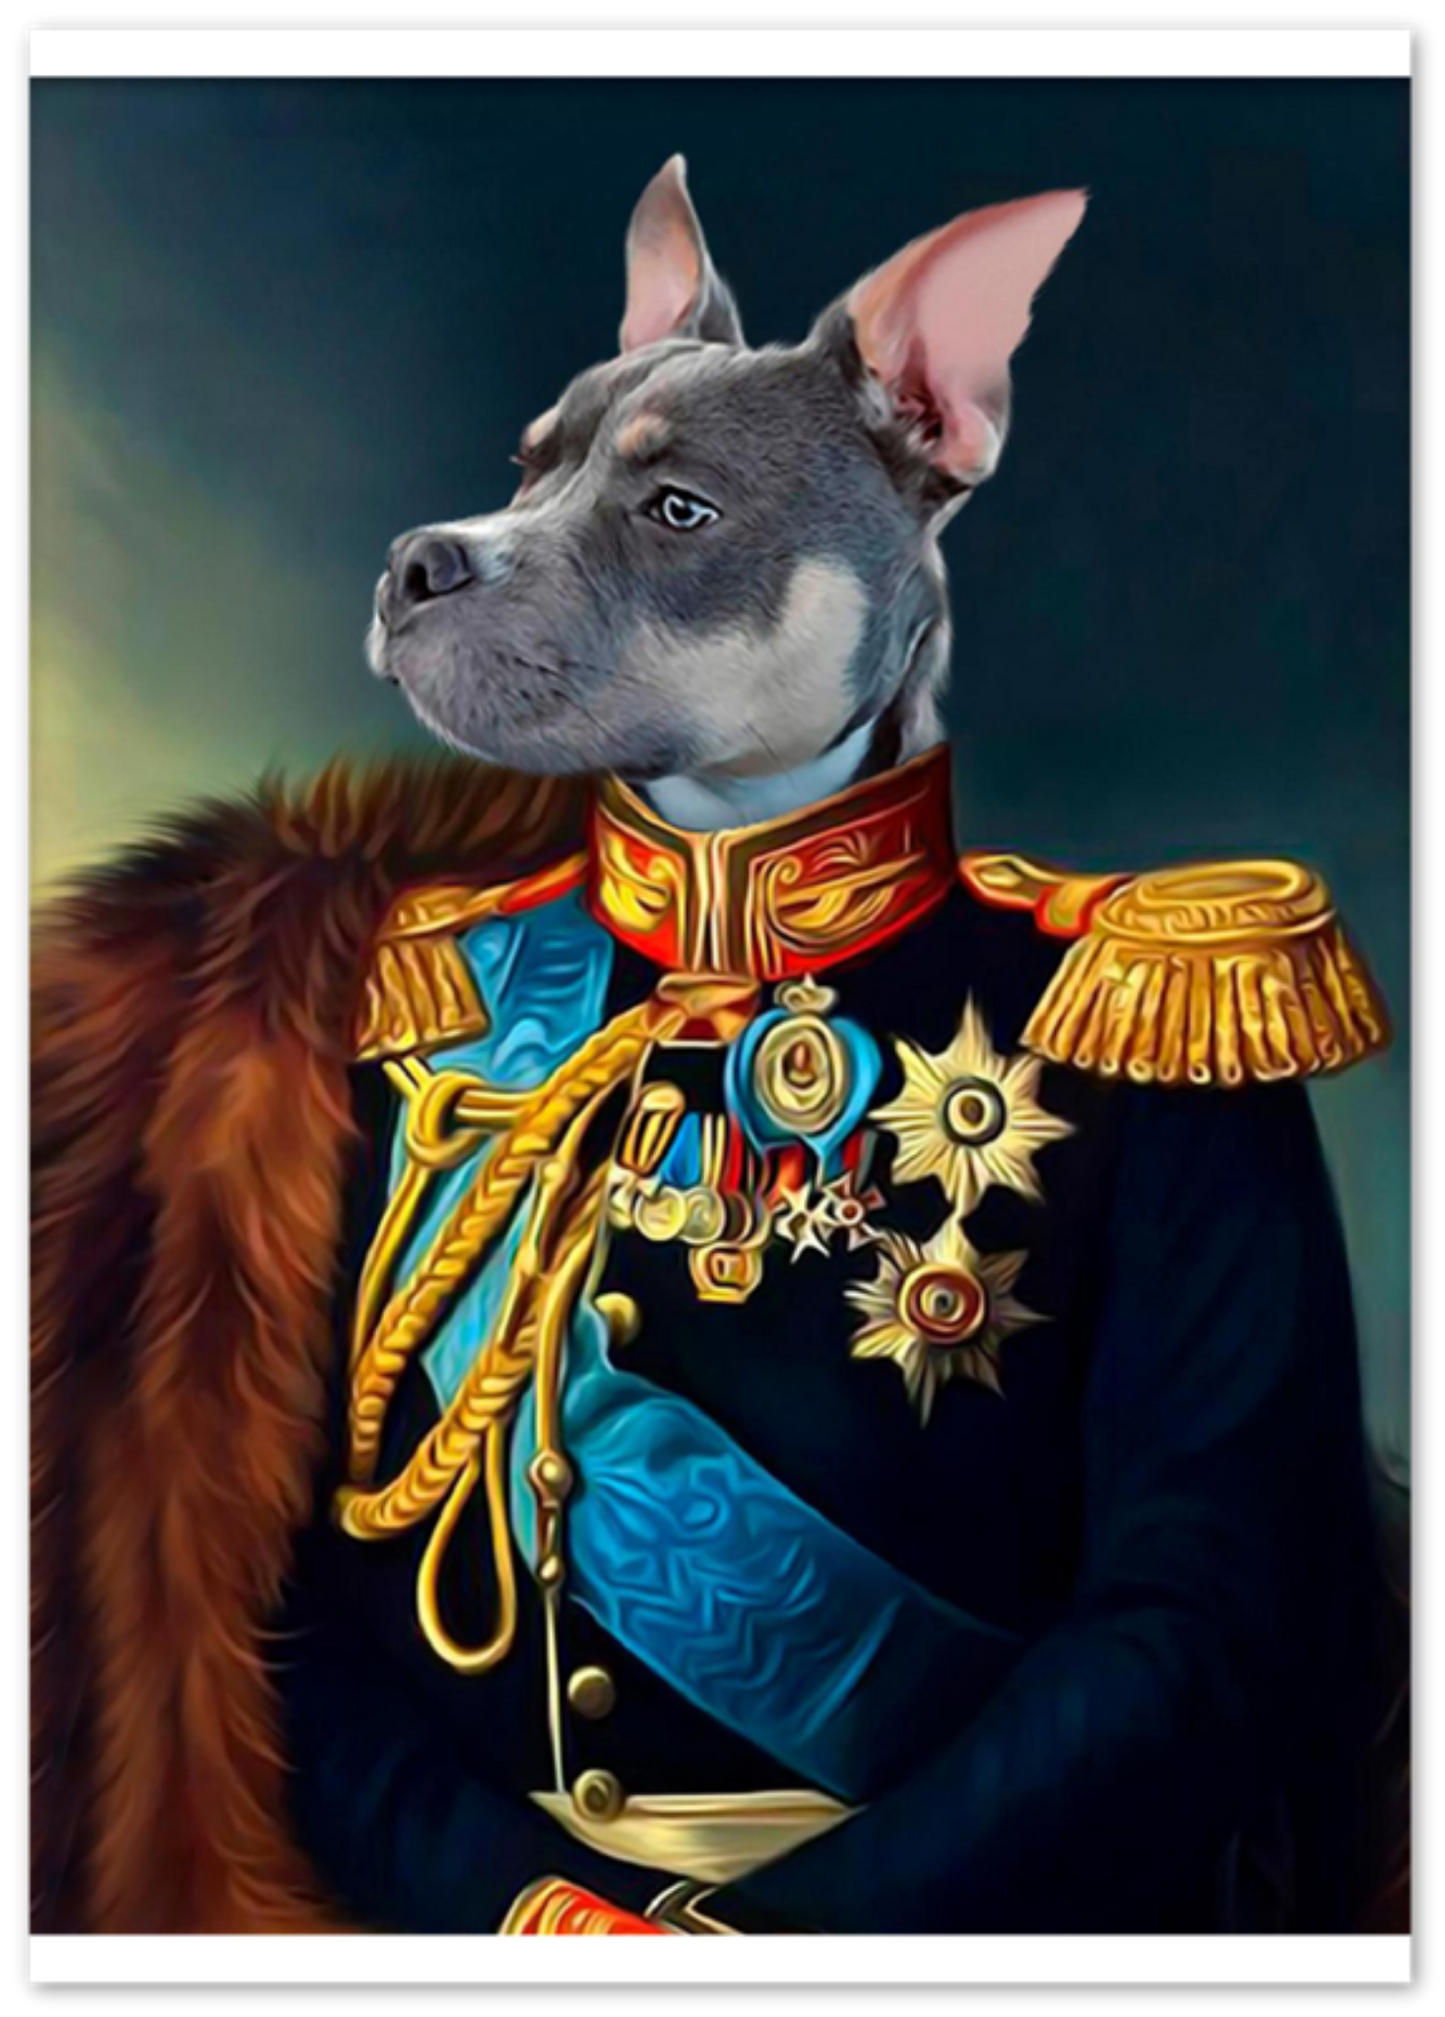 Royal Renaissance Style Pet Portrait Photo Print